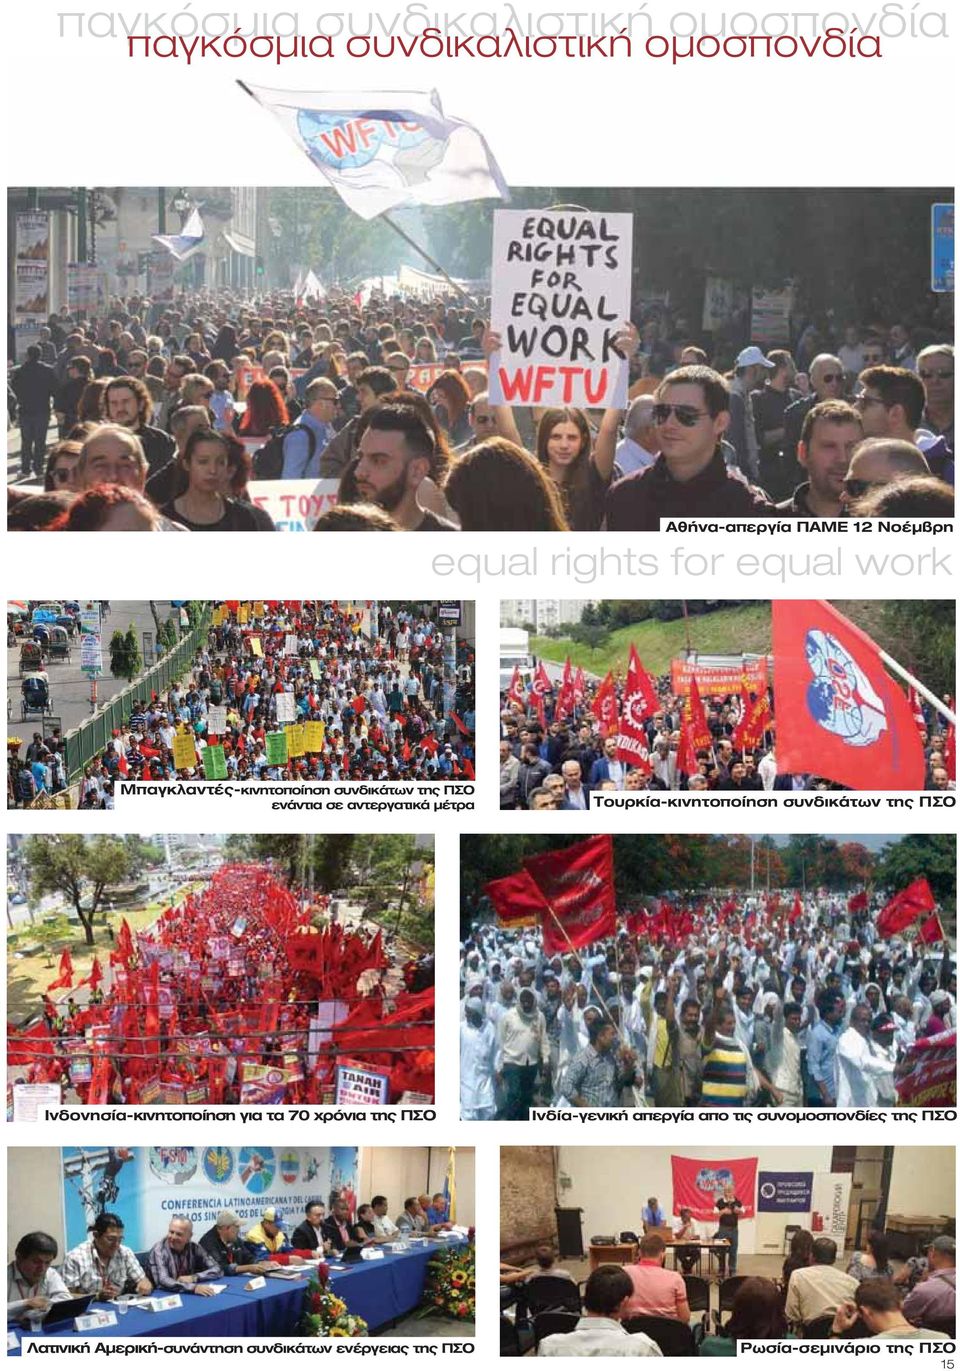 Τουρκία-κινητοποίηση συνδικάτων της ΠΣΟ Ινδονησία-κινητοποίηση για τα 70 χρόνια της ΠΣΟ Ινδία-γενική απεργία